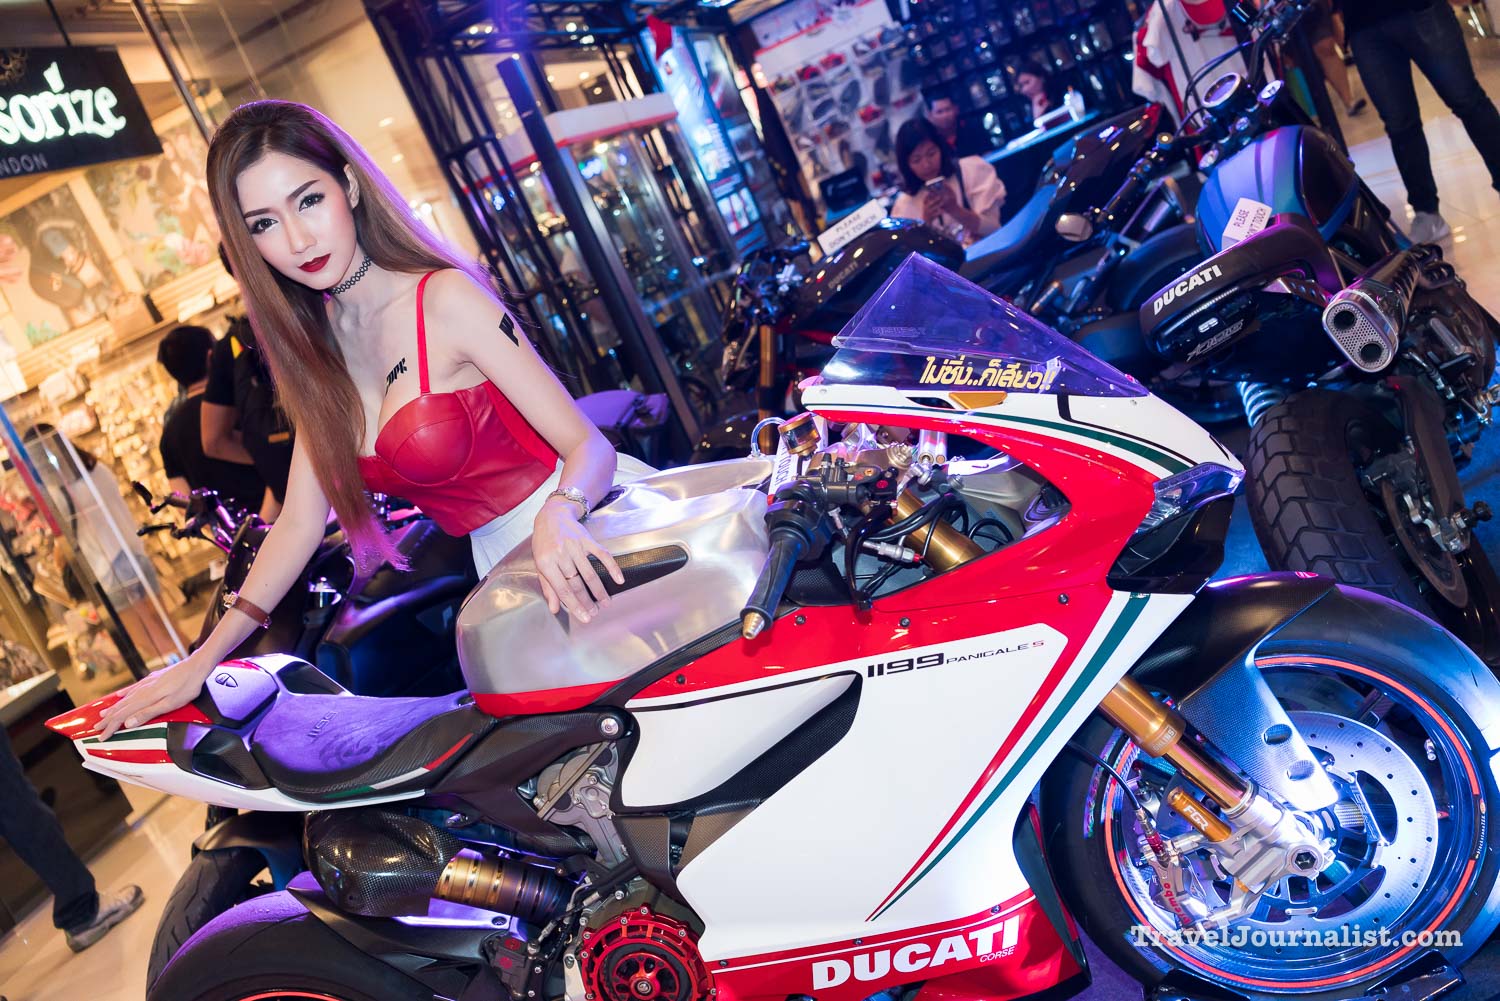 Motorcycles-Pretty-Asian-Girls-Bangkok-Thailand-65